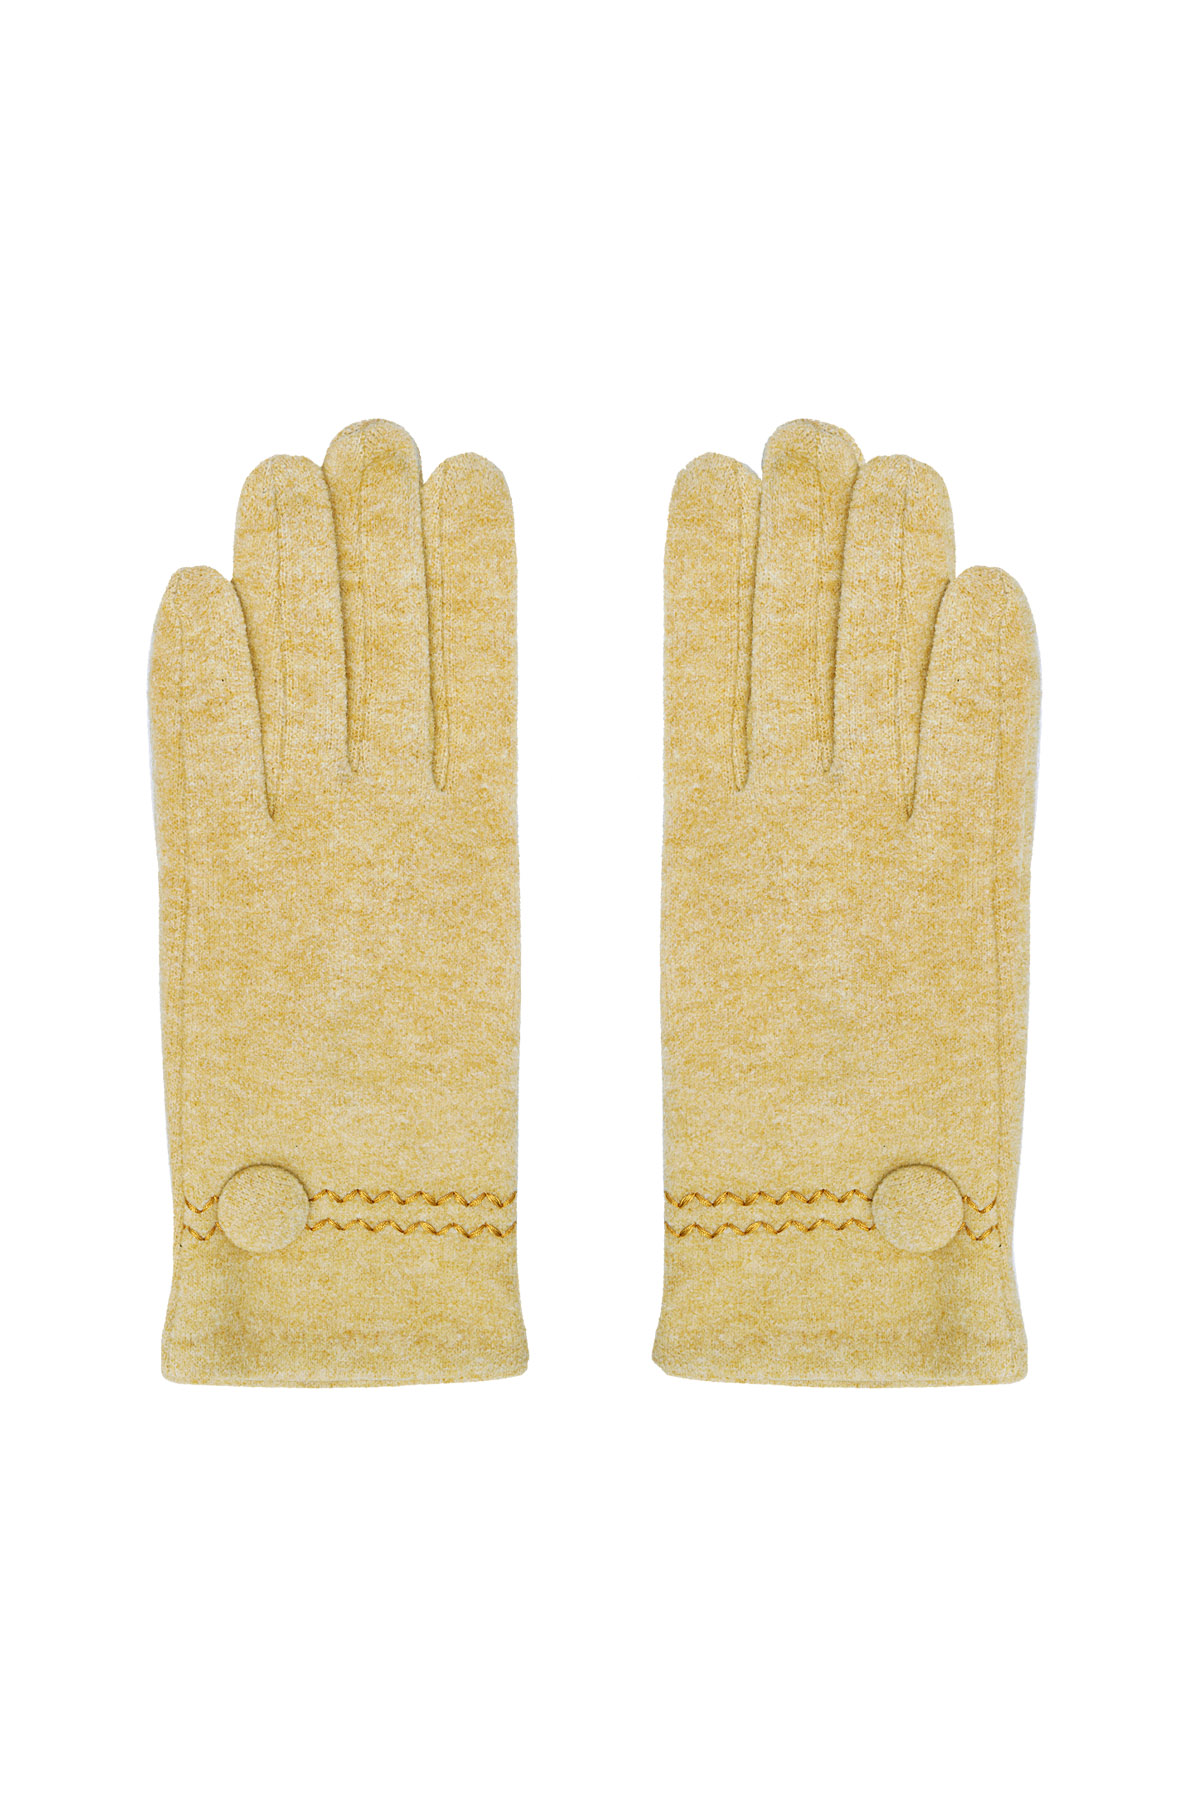 Handschuhe mit Knopf – Senf